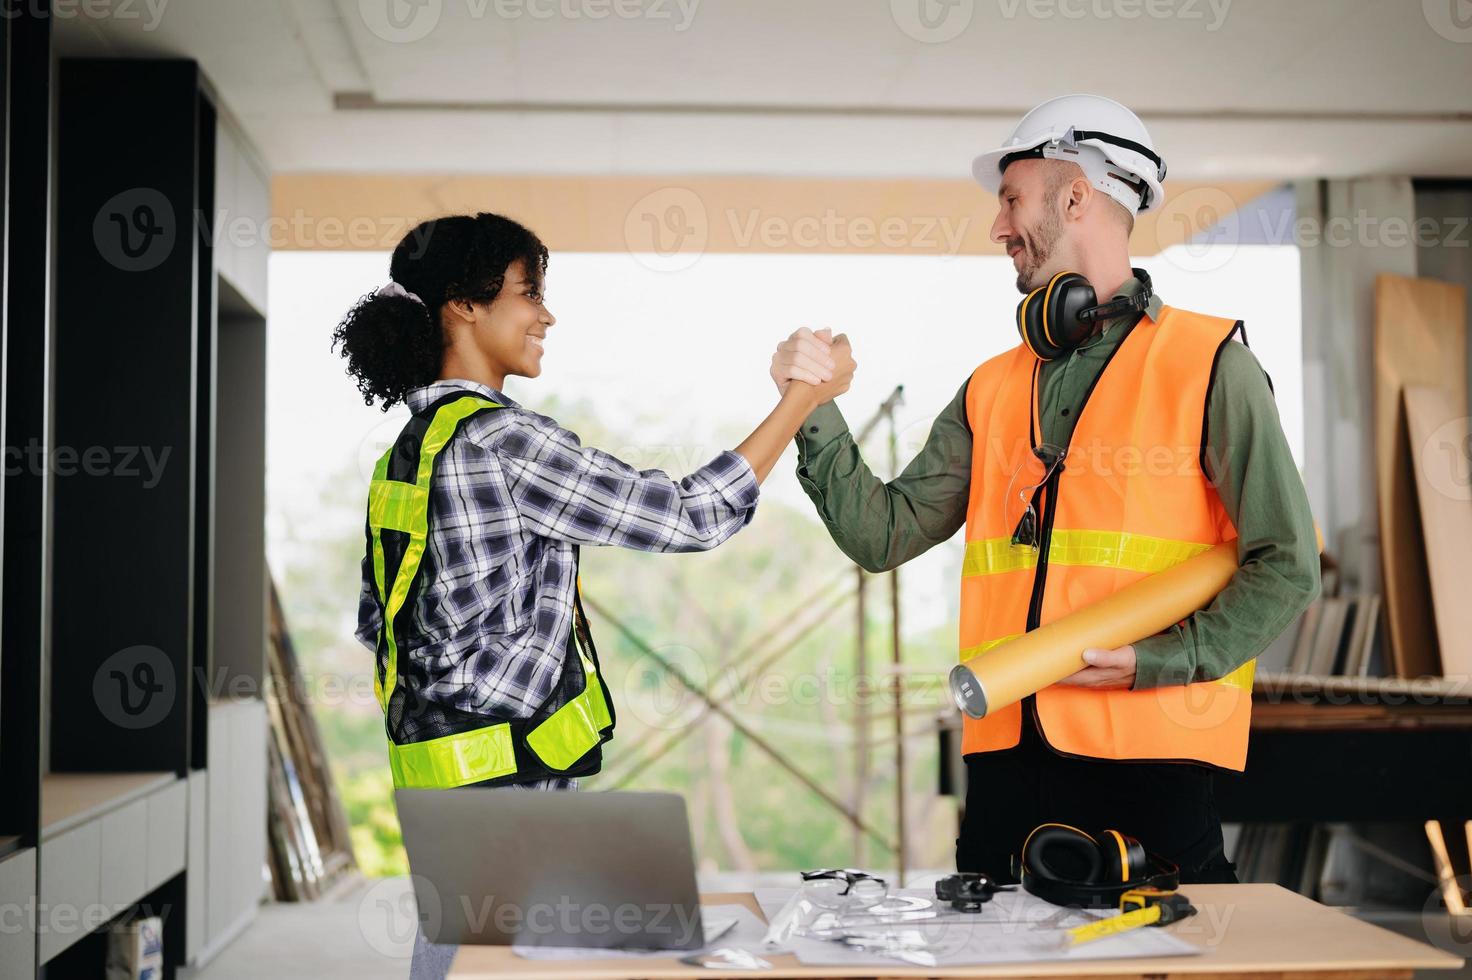 engenheiro e empreiteiro dão as mãos após a assinatura do contrato, eles estão tendo um projeto de construção moderno juntos. conceito de cooperação bem-sucedida foto